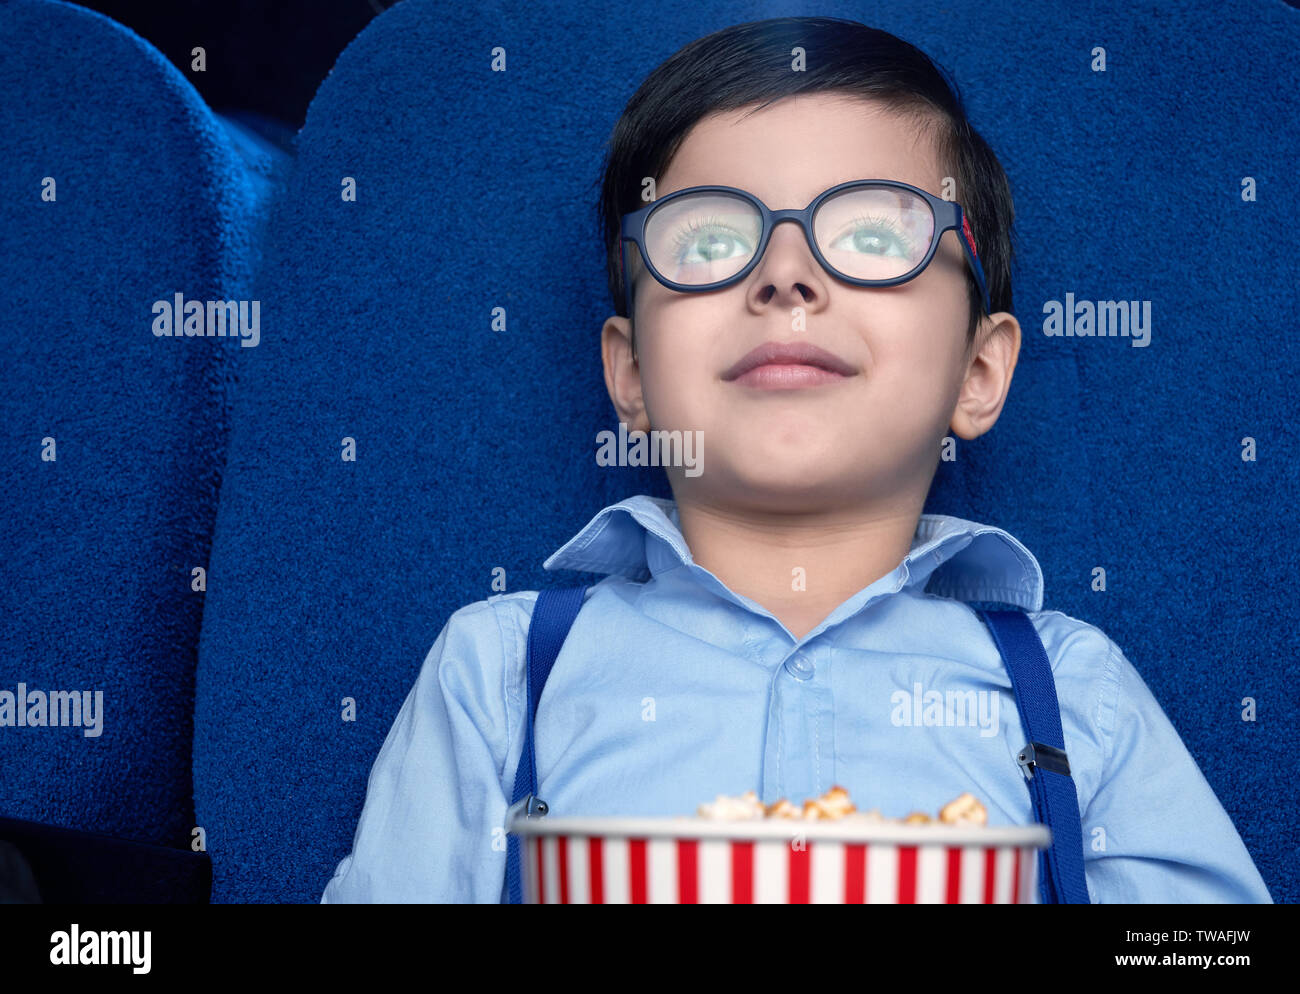 Vorderansicht des lustigen, kleinen Jungen im Kino sitzen und beobachtete aufgeregt Film. Junge Zuschauer Brillen und weißes Hemd lächelnd und Entspannung am Wochenende. Konzept der Unterhaltung und des Genusses. Stockfoto